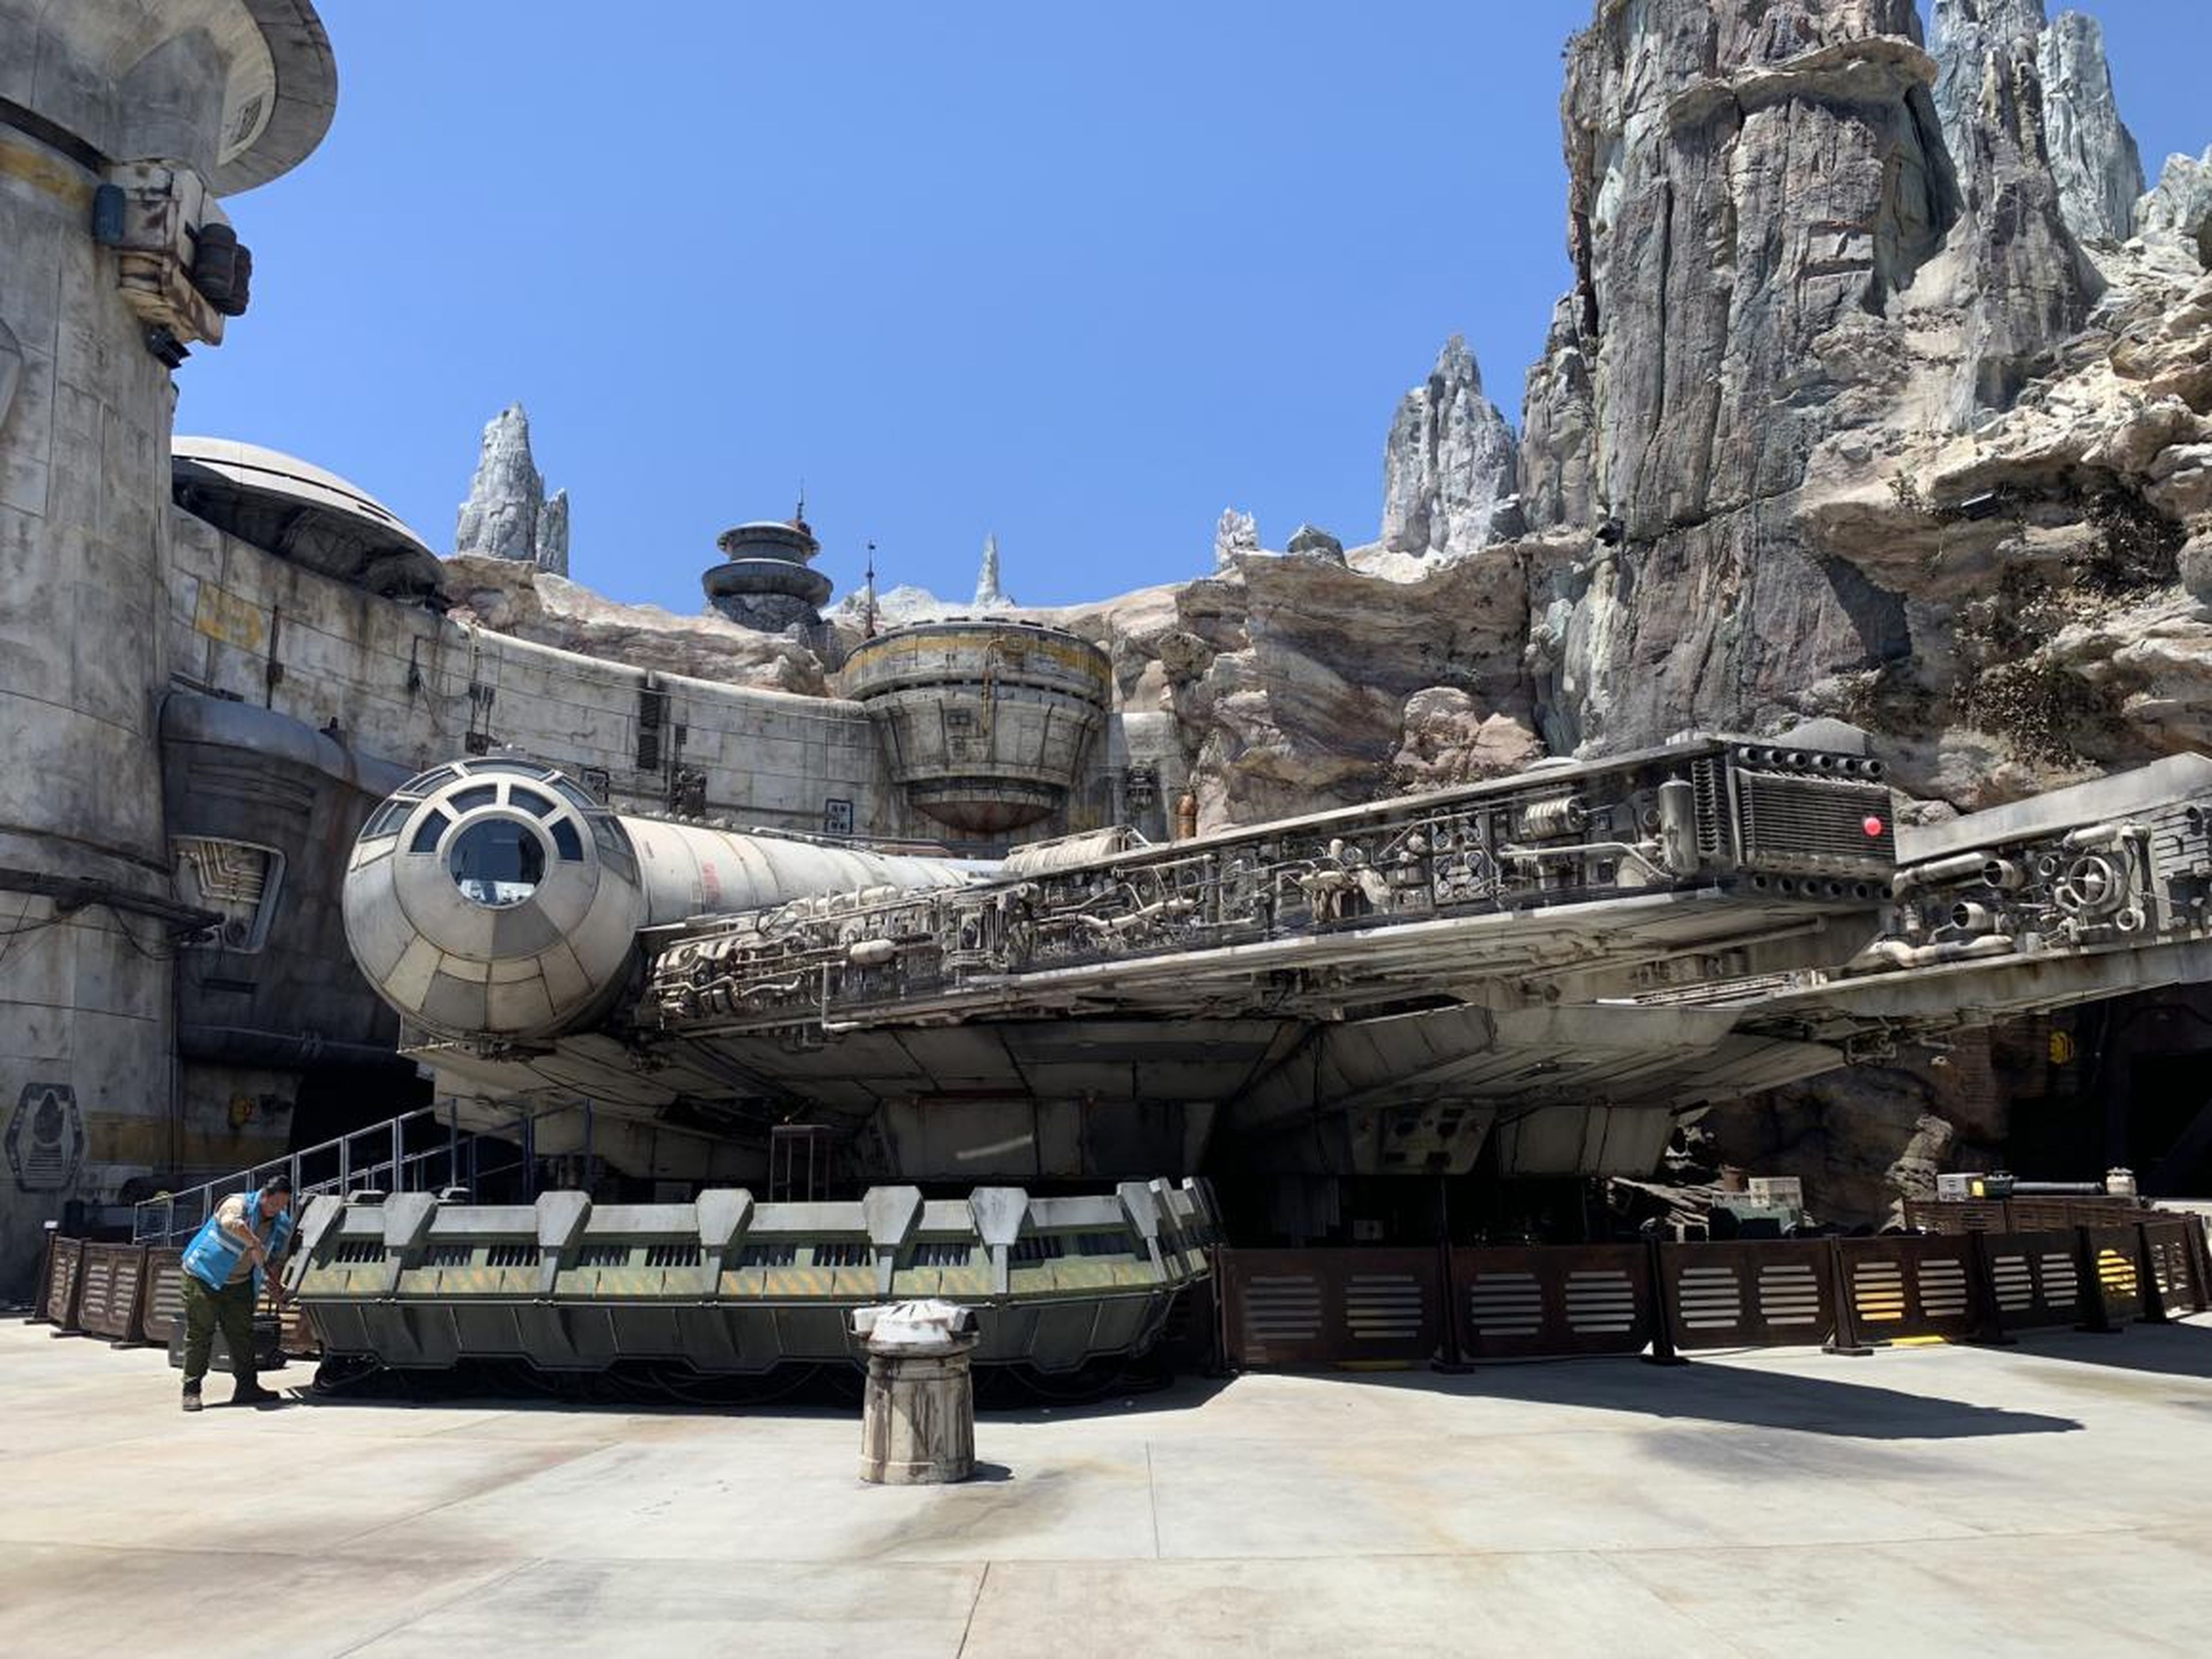 Una mirada más cercana a la memorable nave de Han Solo.